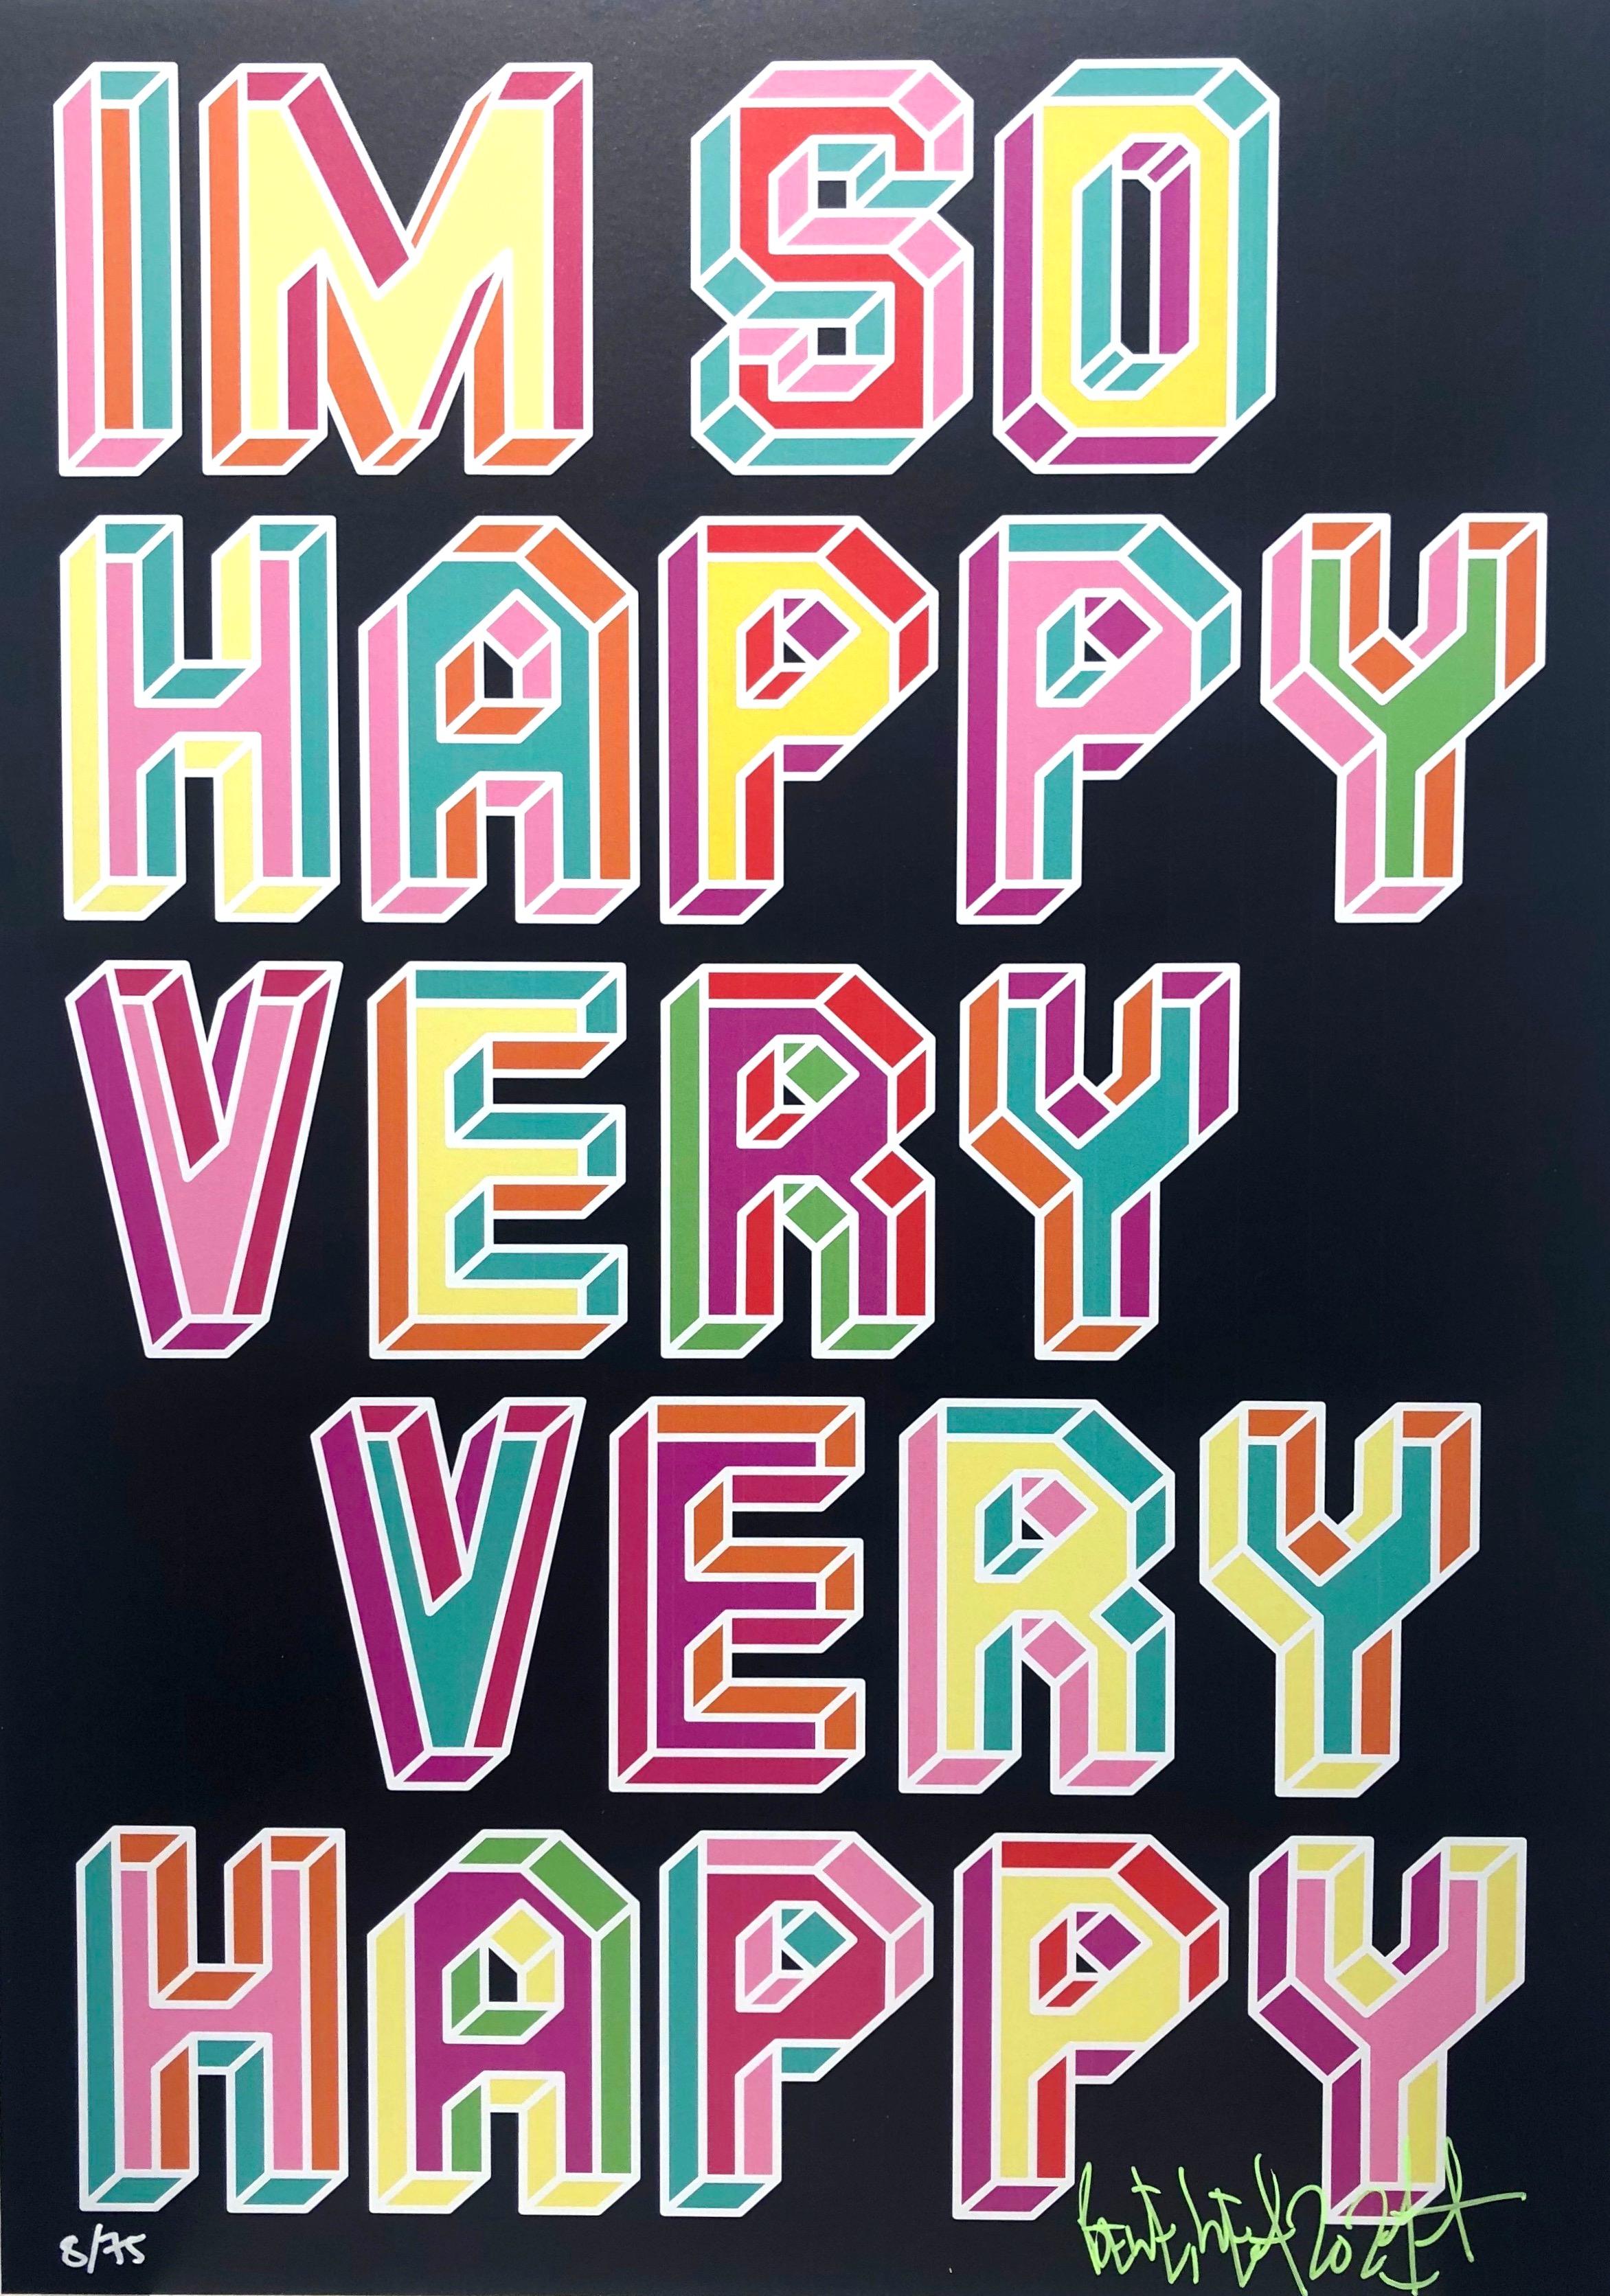 I'm So Happy - Print by Ben Eine